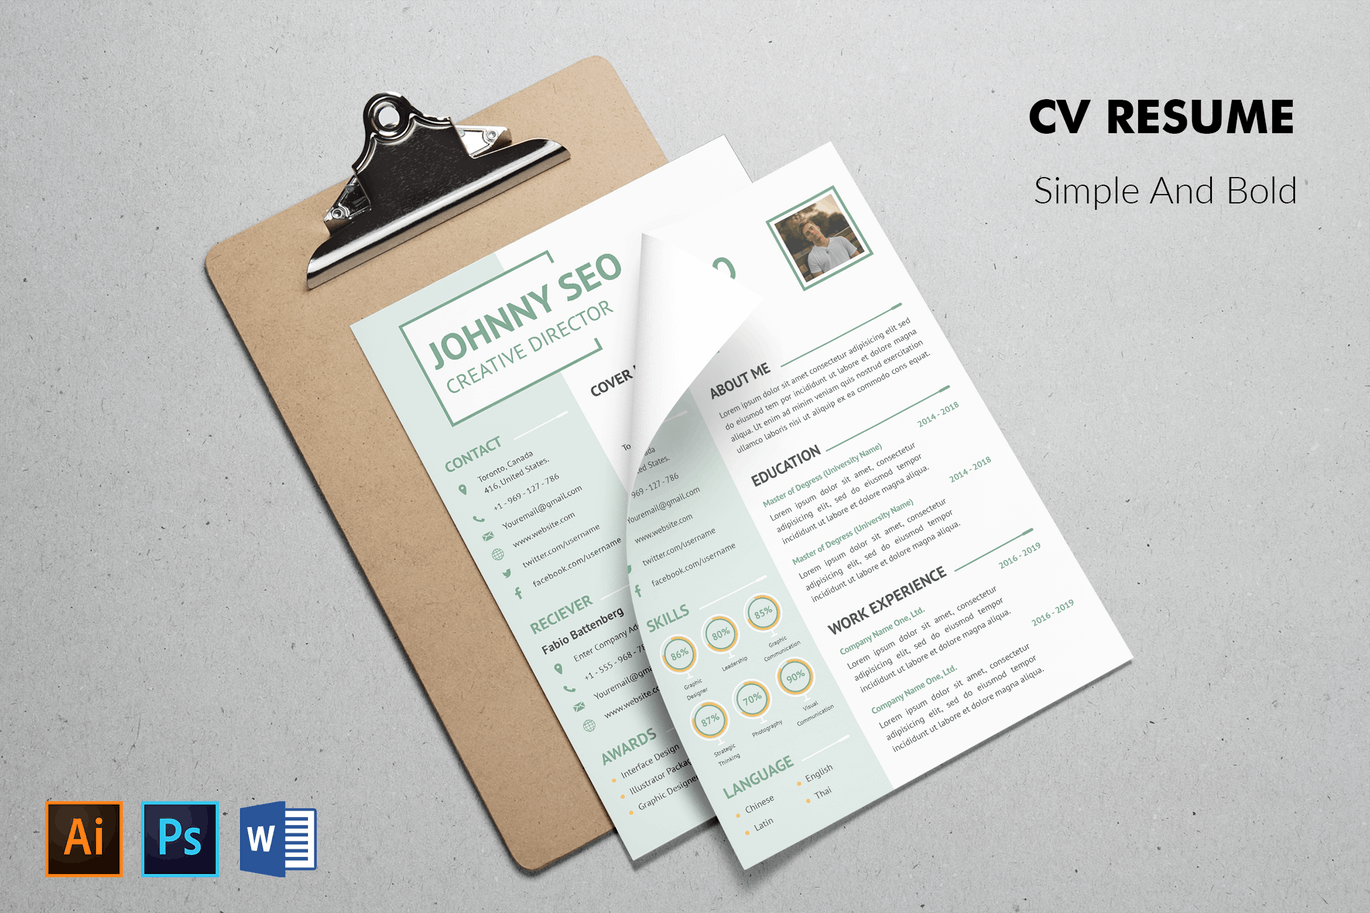 标准式两页排版风格电子素材库精选简历模板 CV Resume Simple And Modern插图